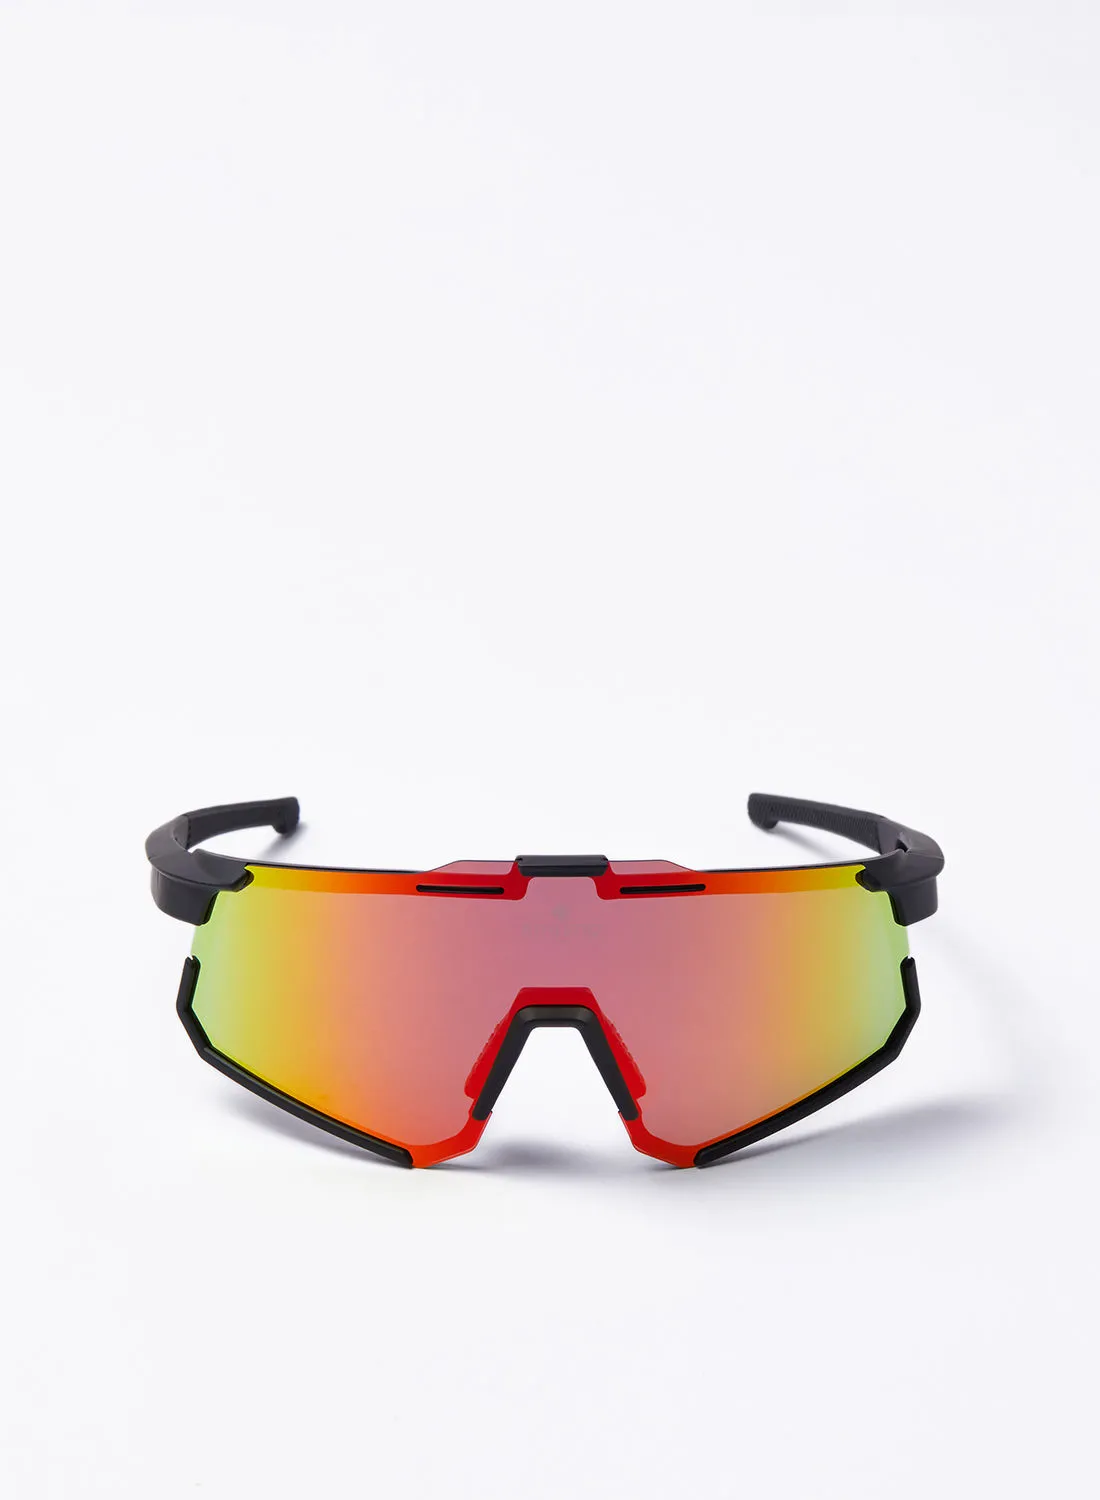 نظارة شمسية رياضية لركوب الدراجات البخارية - Athletiq Club جبل السوداء - إطار أسود مع عدسة عاكسة متعددة الطبقات باللون الأحمر